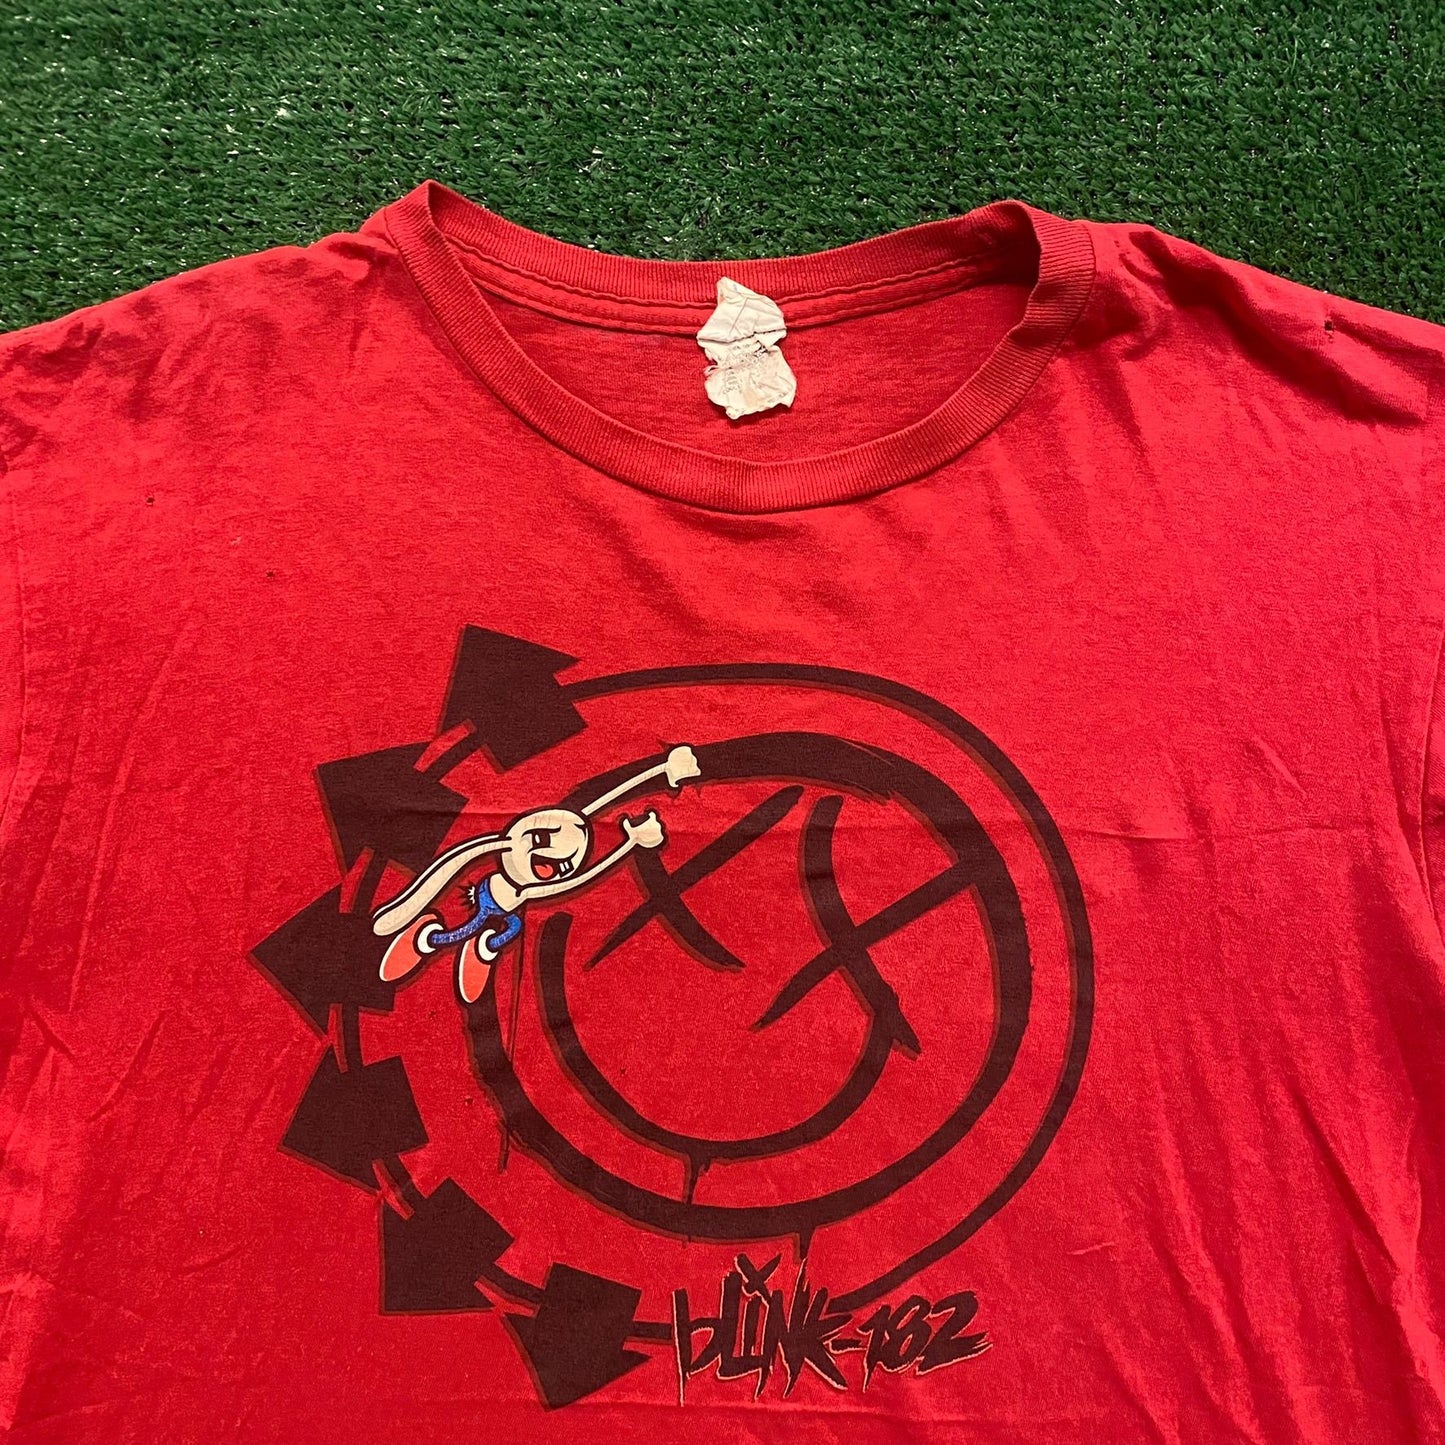 Blink 182 Vintage Punk Rock Band T-Shirt